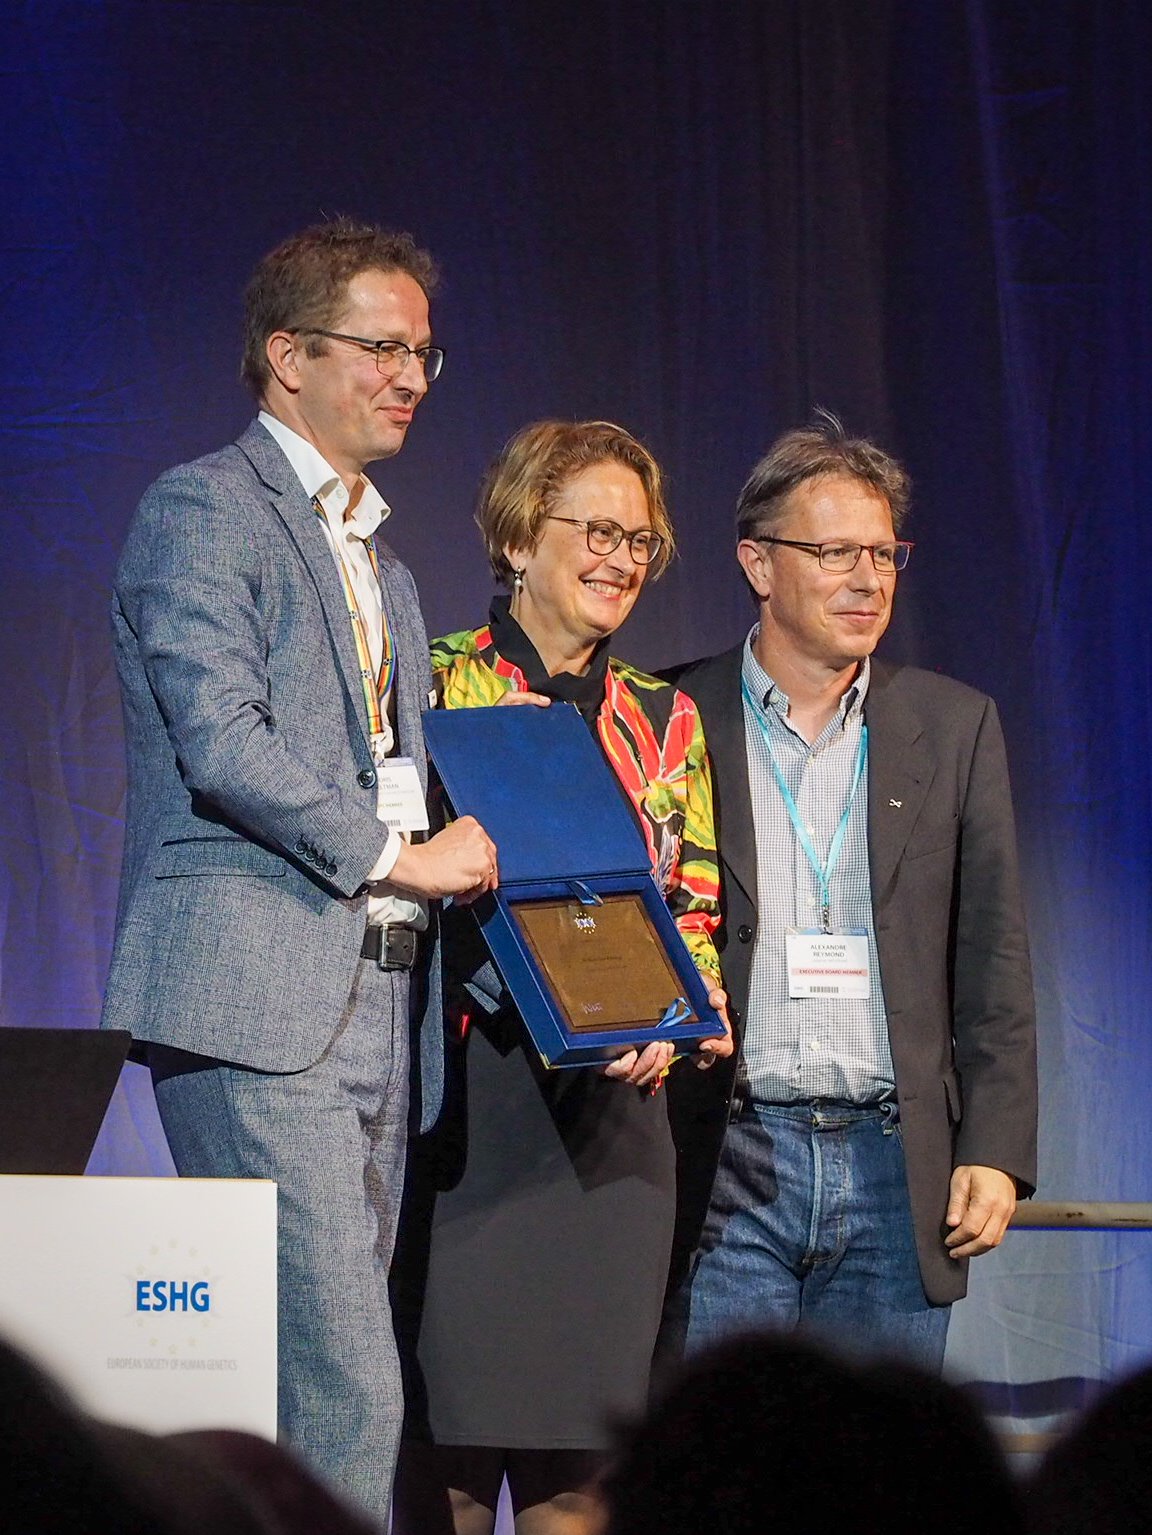 Wijmenga ontving haar prijs op dinsdag 18 juni tijdens het ESHG-congres.Prof. dr. Cisca Wijmenga has been awarded the 2019 award of European Society of Human Genetics (ESHG).